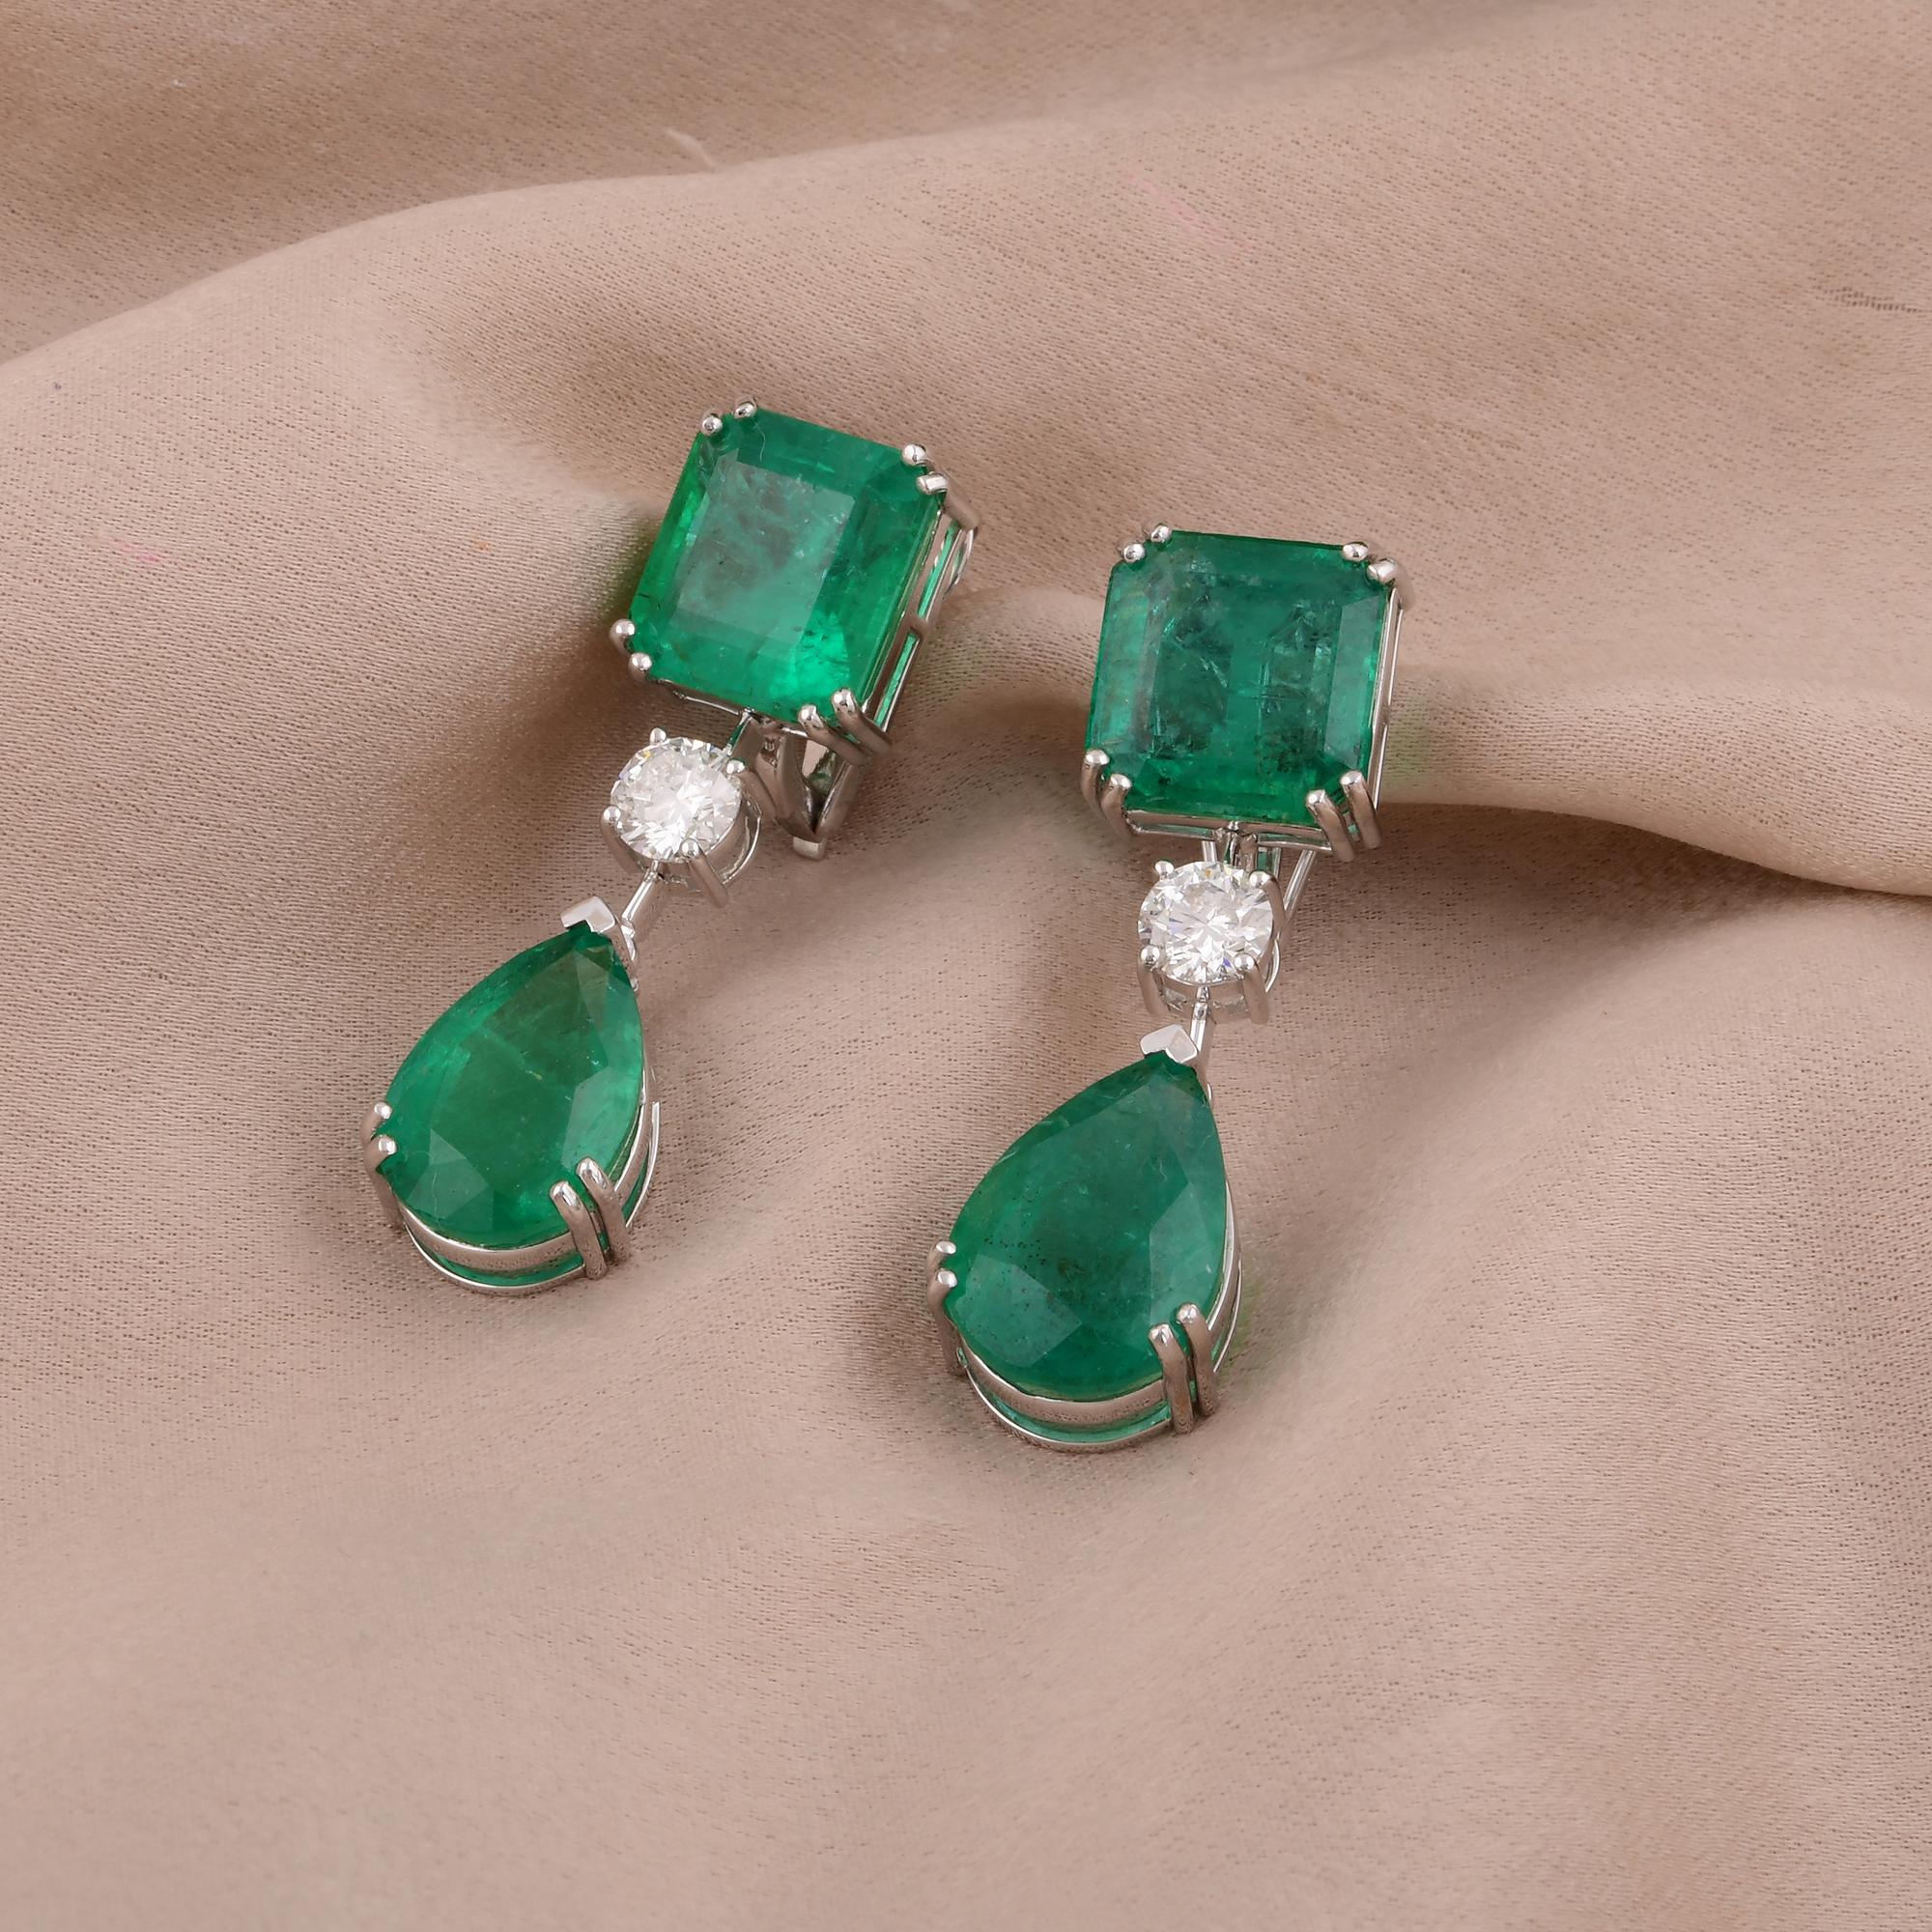 Taille émeraude Zambian Emerald Gemstone Dangle Earrings Diamond 14 Karat White Gold New jewelry en vente